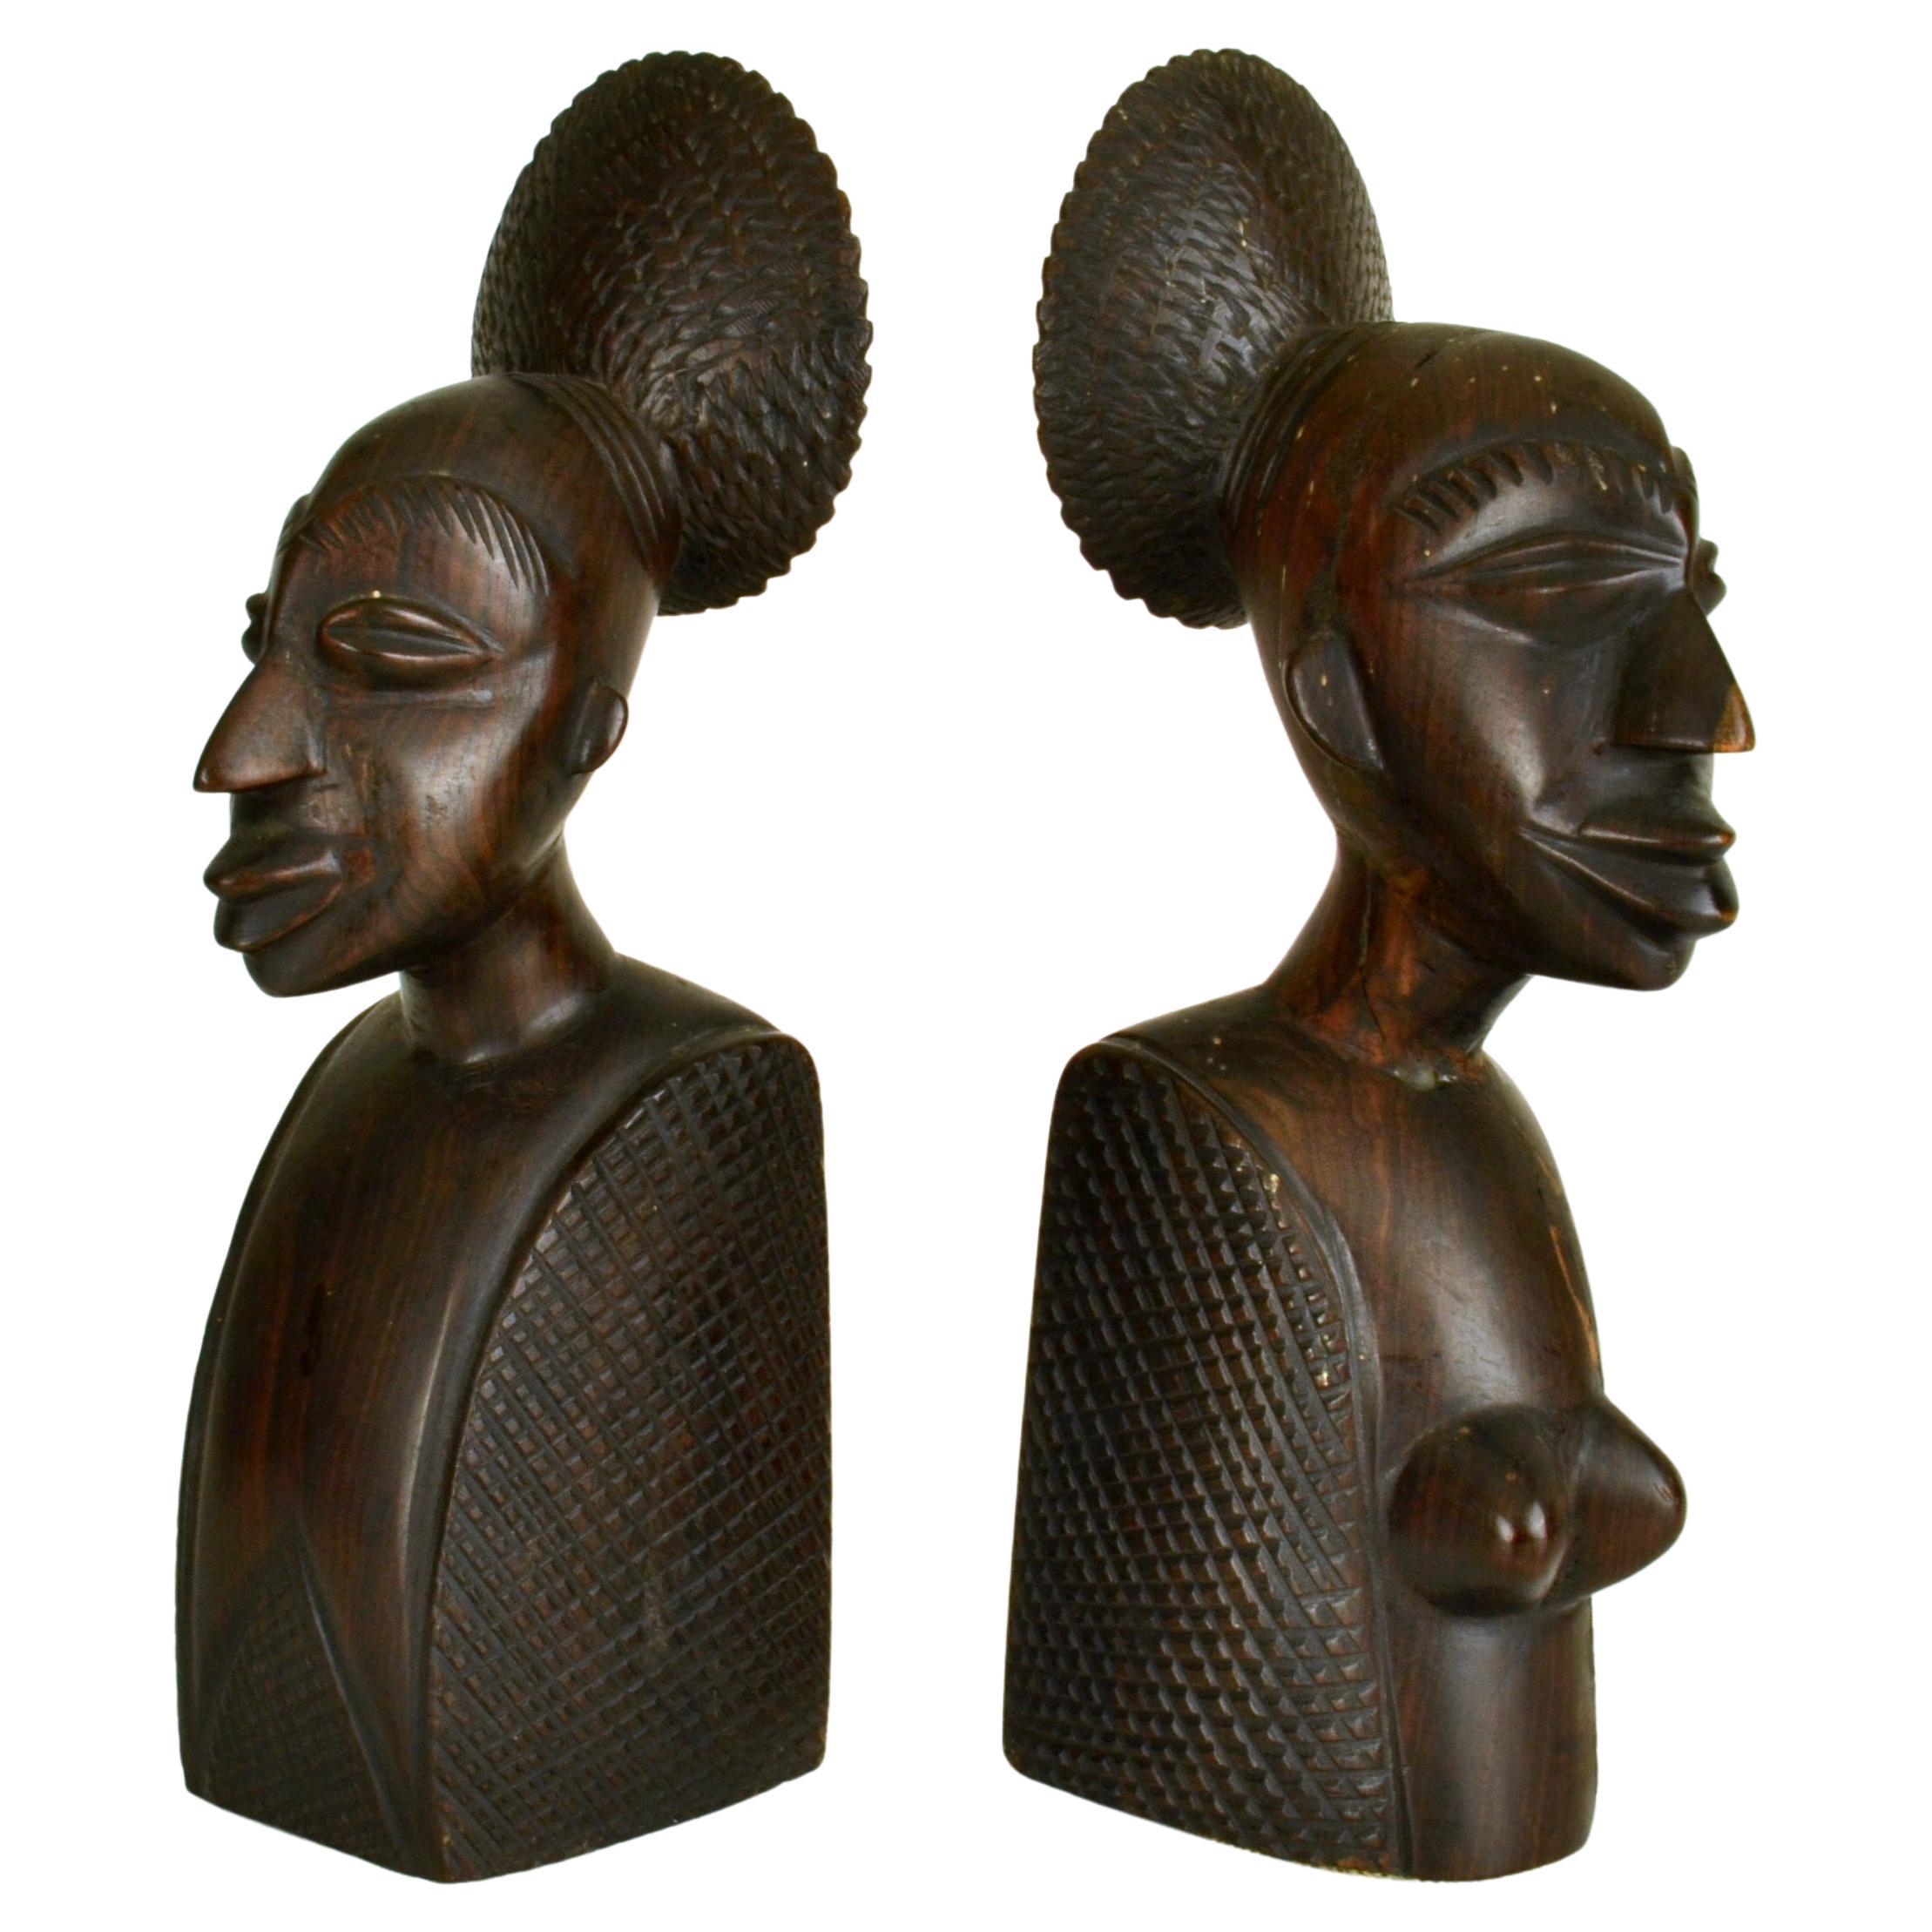 Paire de serre-livres africains figuratifs sculptés en bois de feuillus